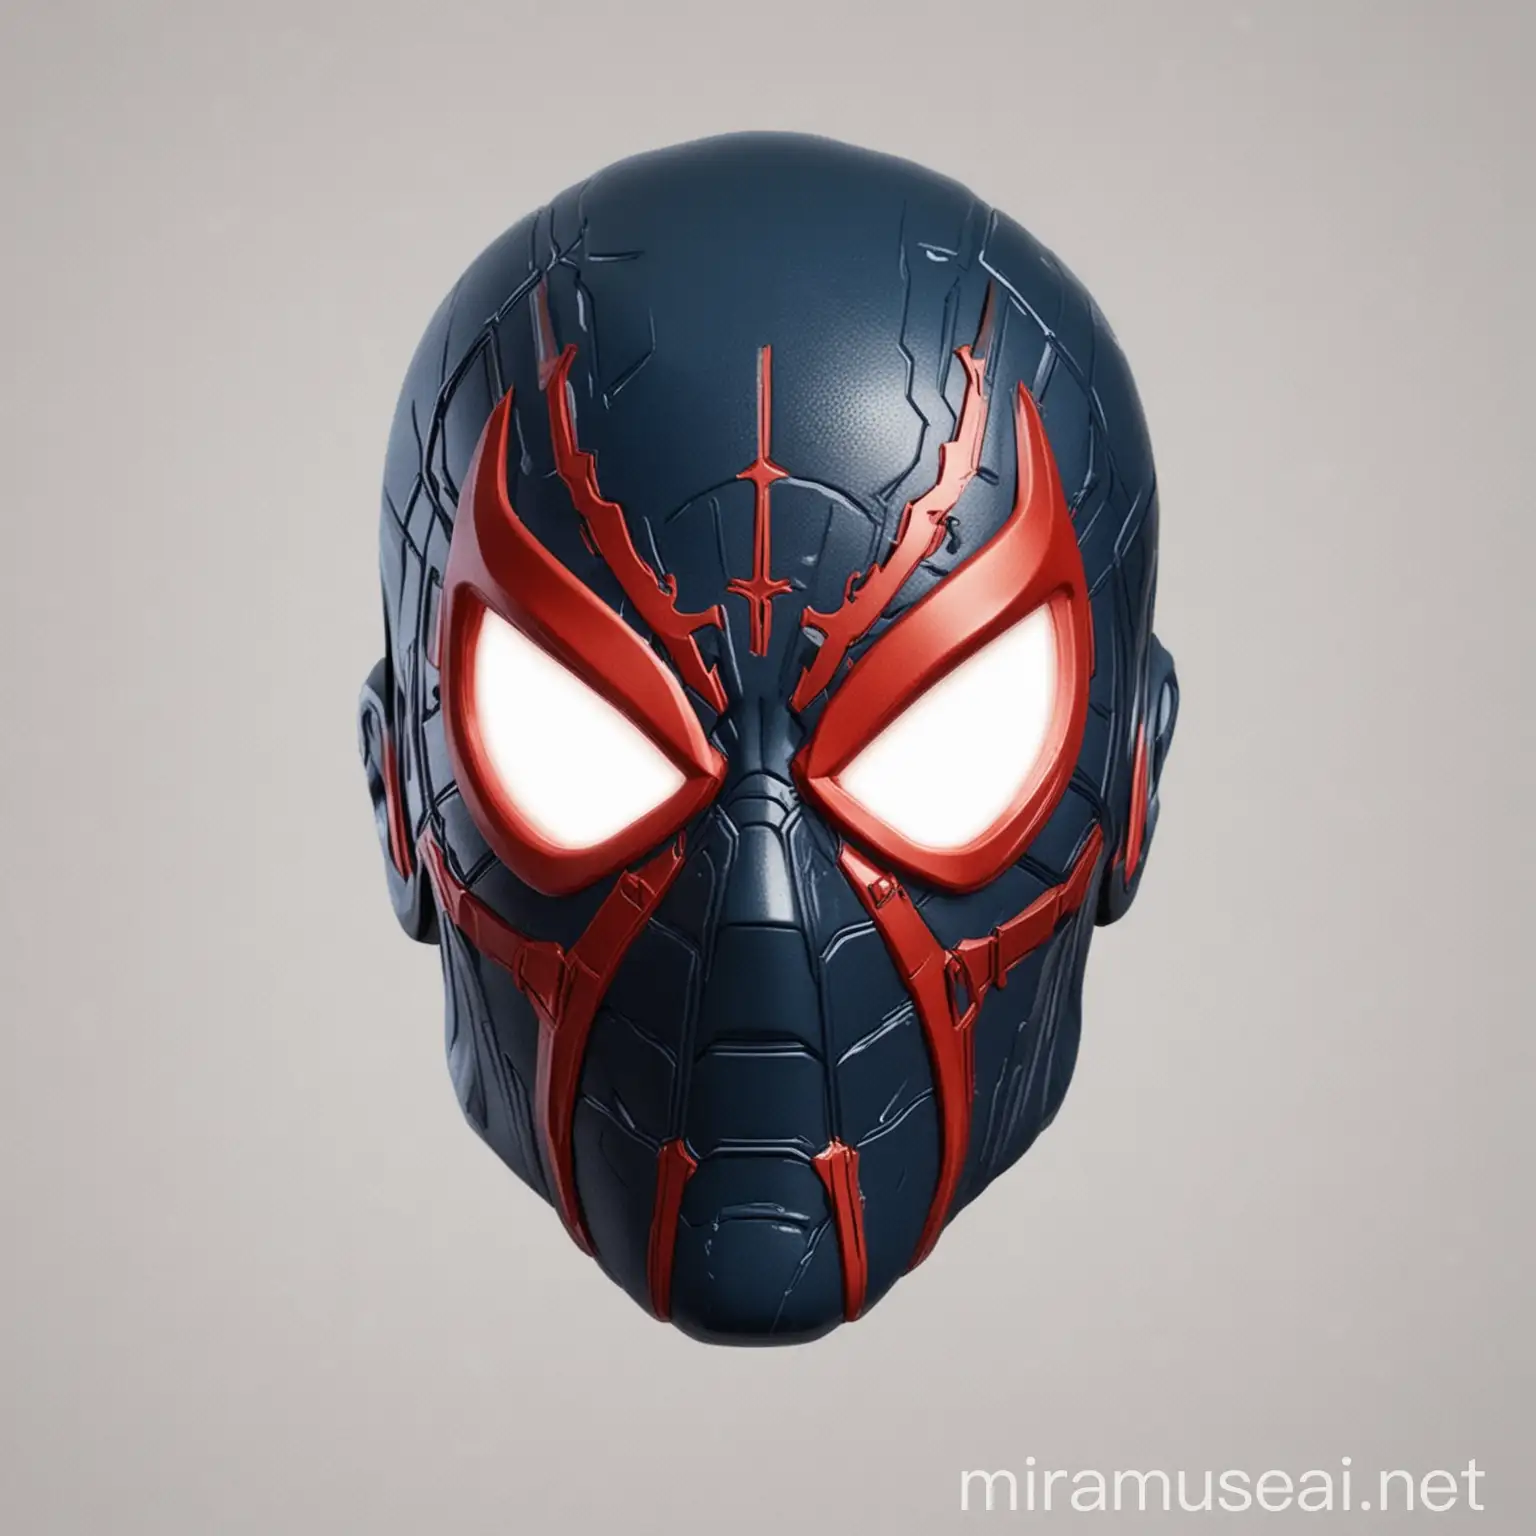 Spider man 2099 head emoji.